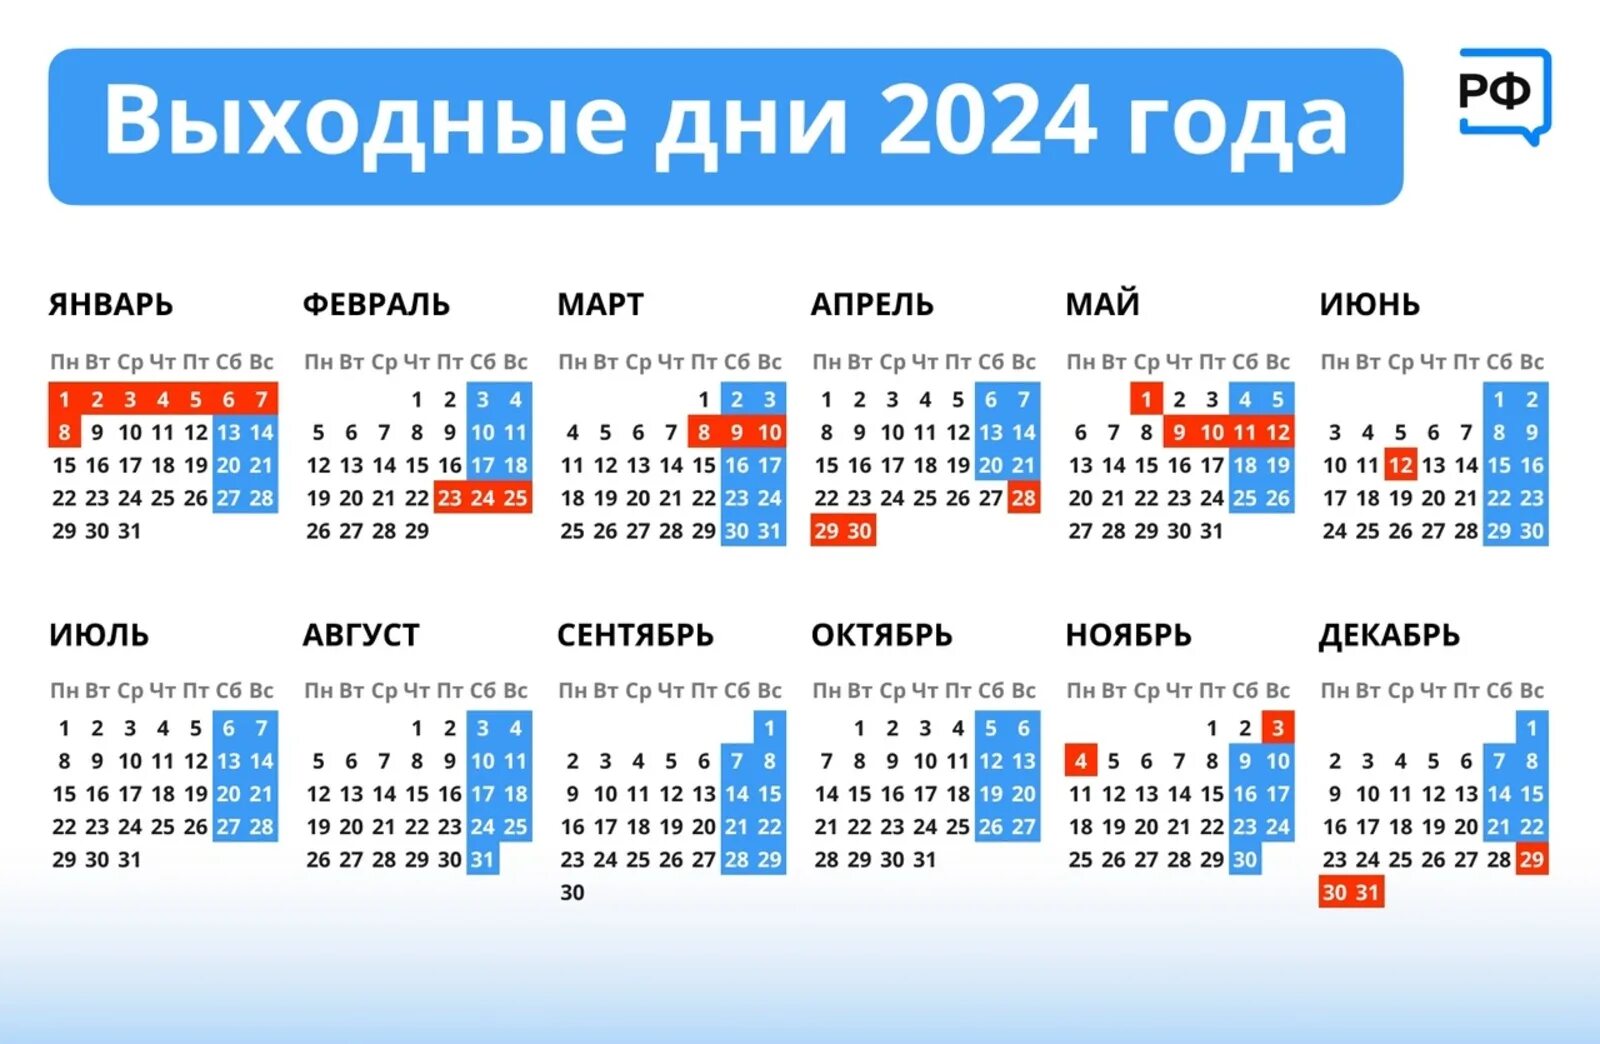 Календарь праздников рабочих дней на 2024 год. Календарь 2024 с праздниками. Выходные дни в 2024г. Выходные дни в 2024 году. Выходные и праздничные дни на 2024 год утвержденный правительством.